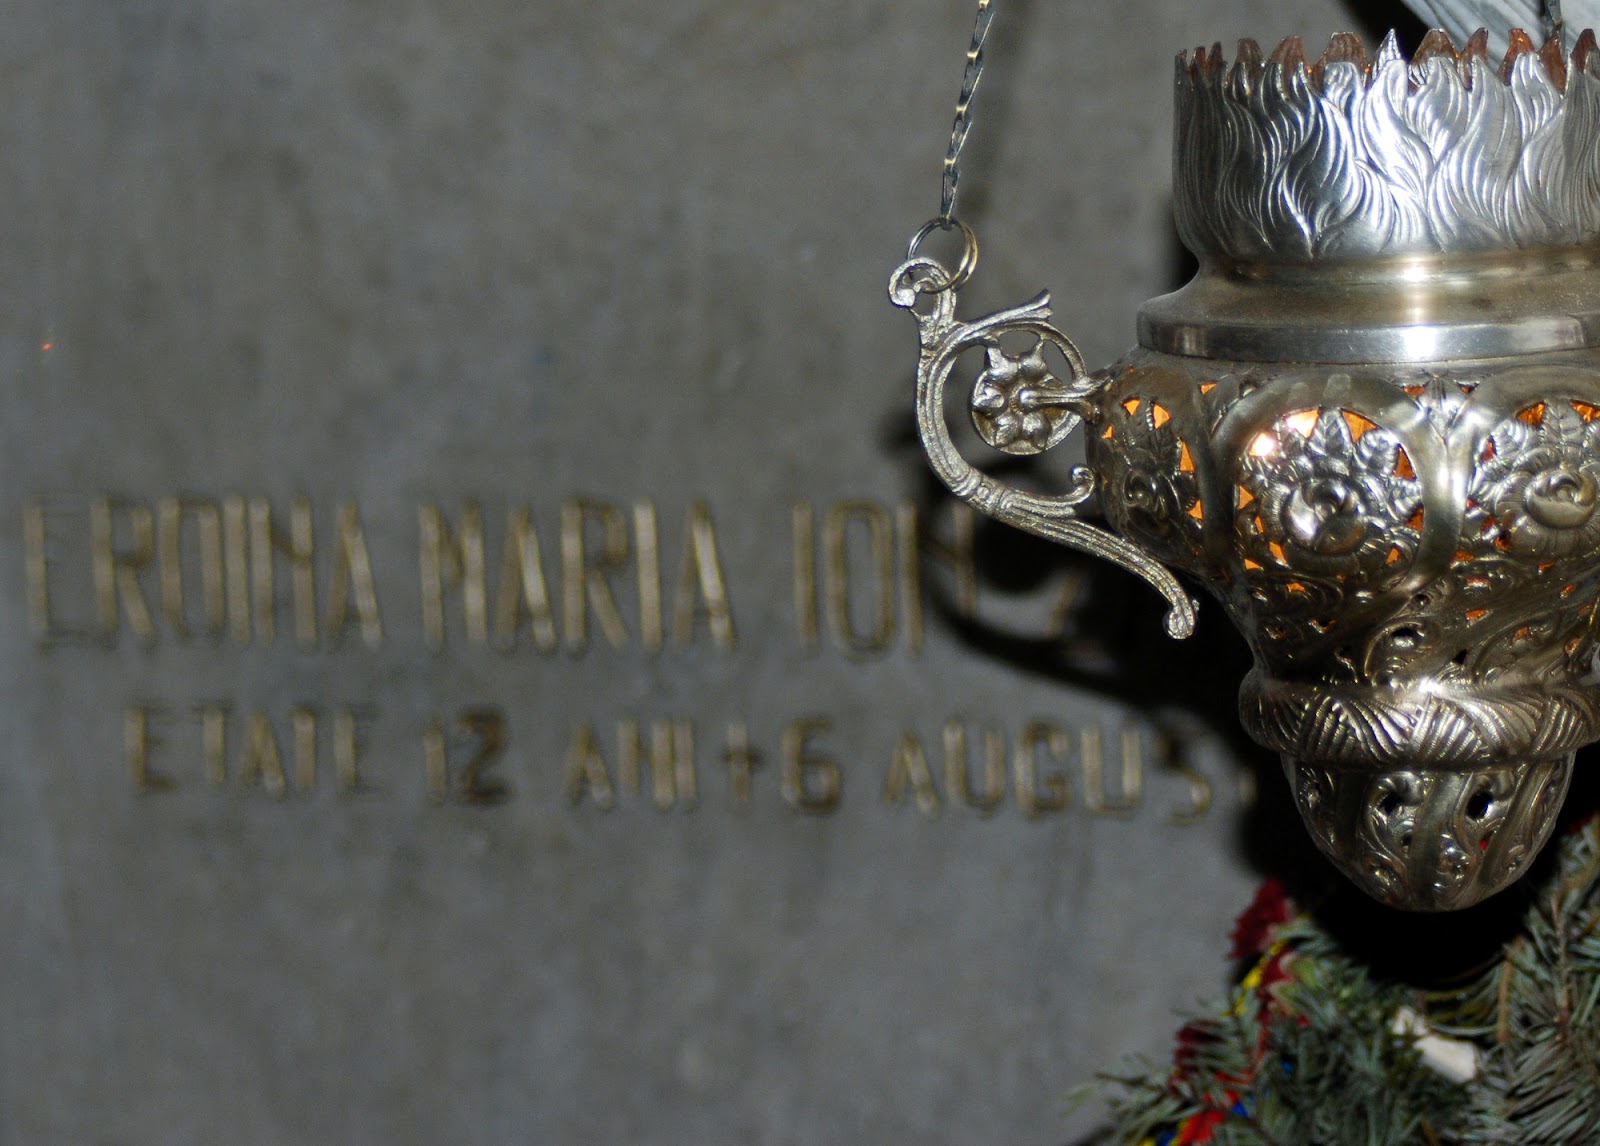 Mormântul Măriucăi -fata de 12 ani ce a avut curajul sa se urce in nucul din spatele casei pentru a da informații soldaților români despre înaintarea trupelor germane. A fost doborâtă de un lunetist.